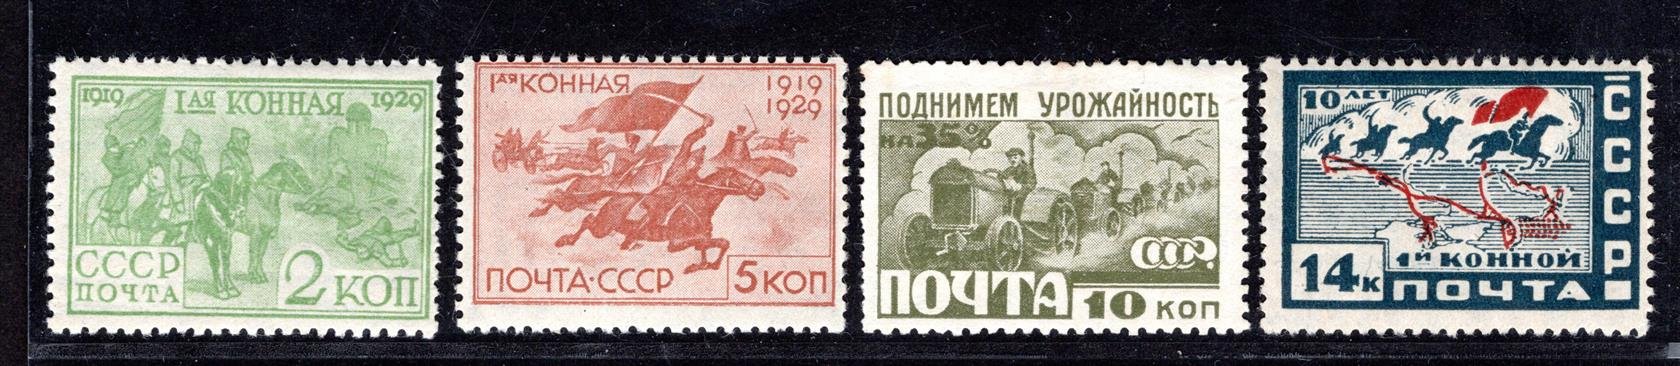 Sovětský Svaz - Mi. 385 - 8,vojenské jezdectvo